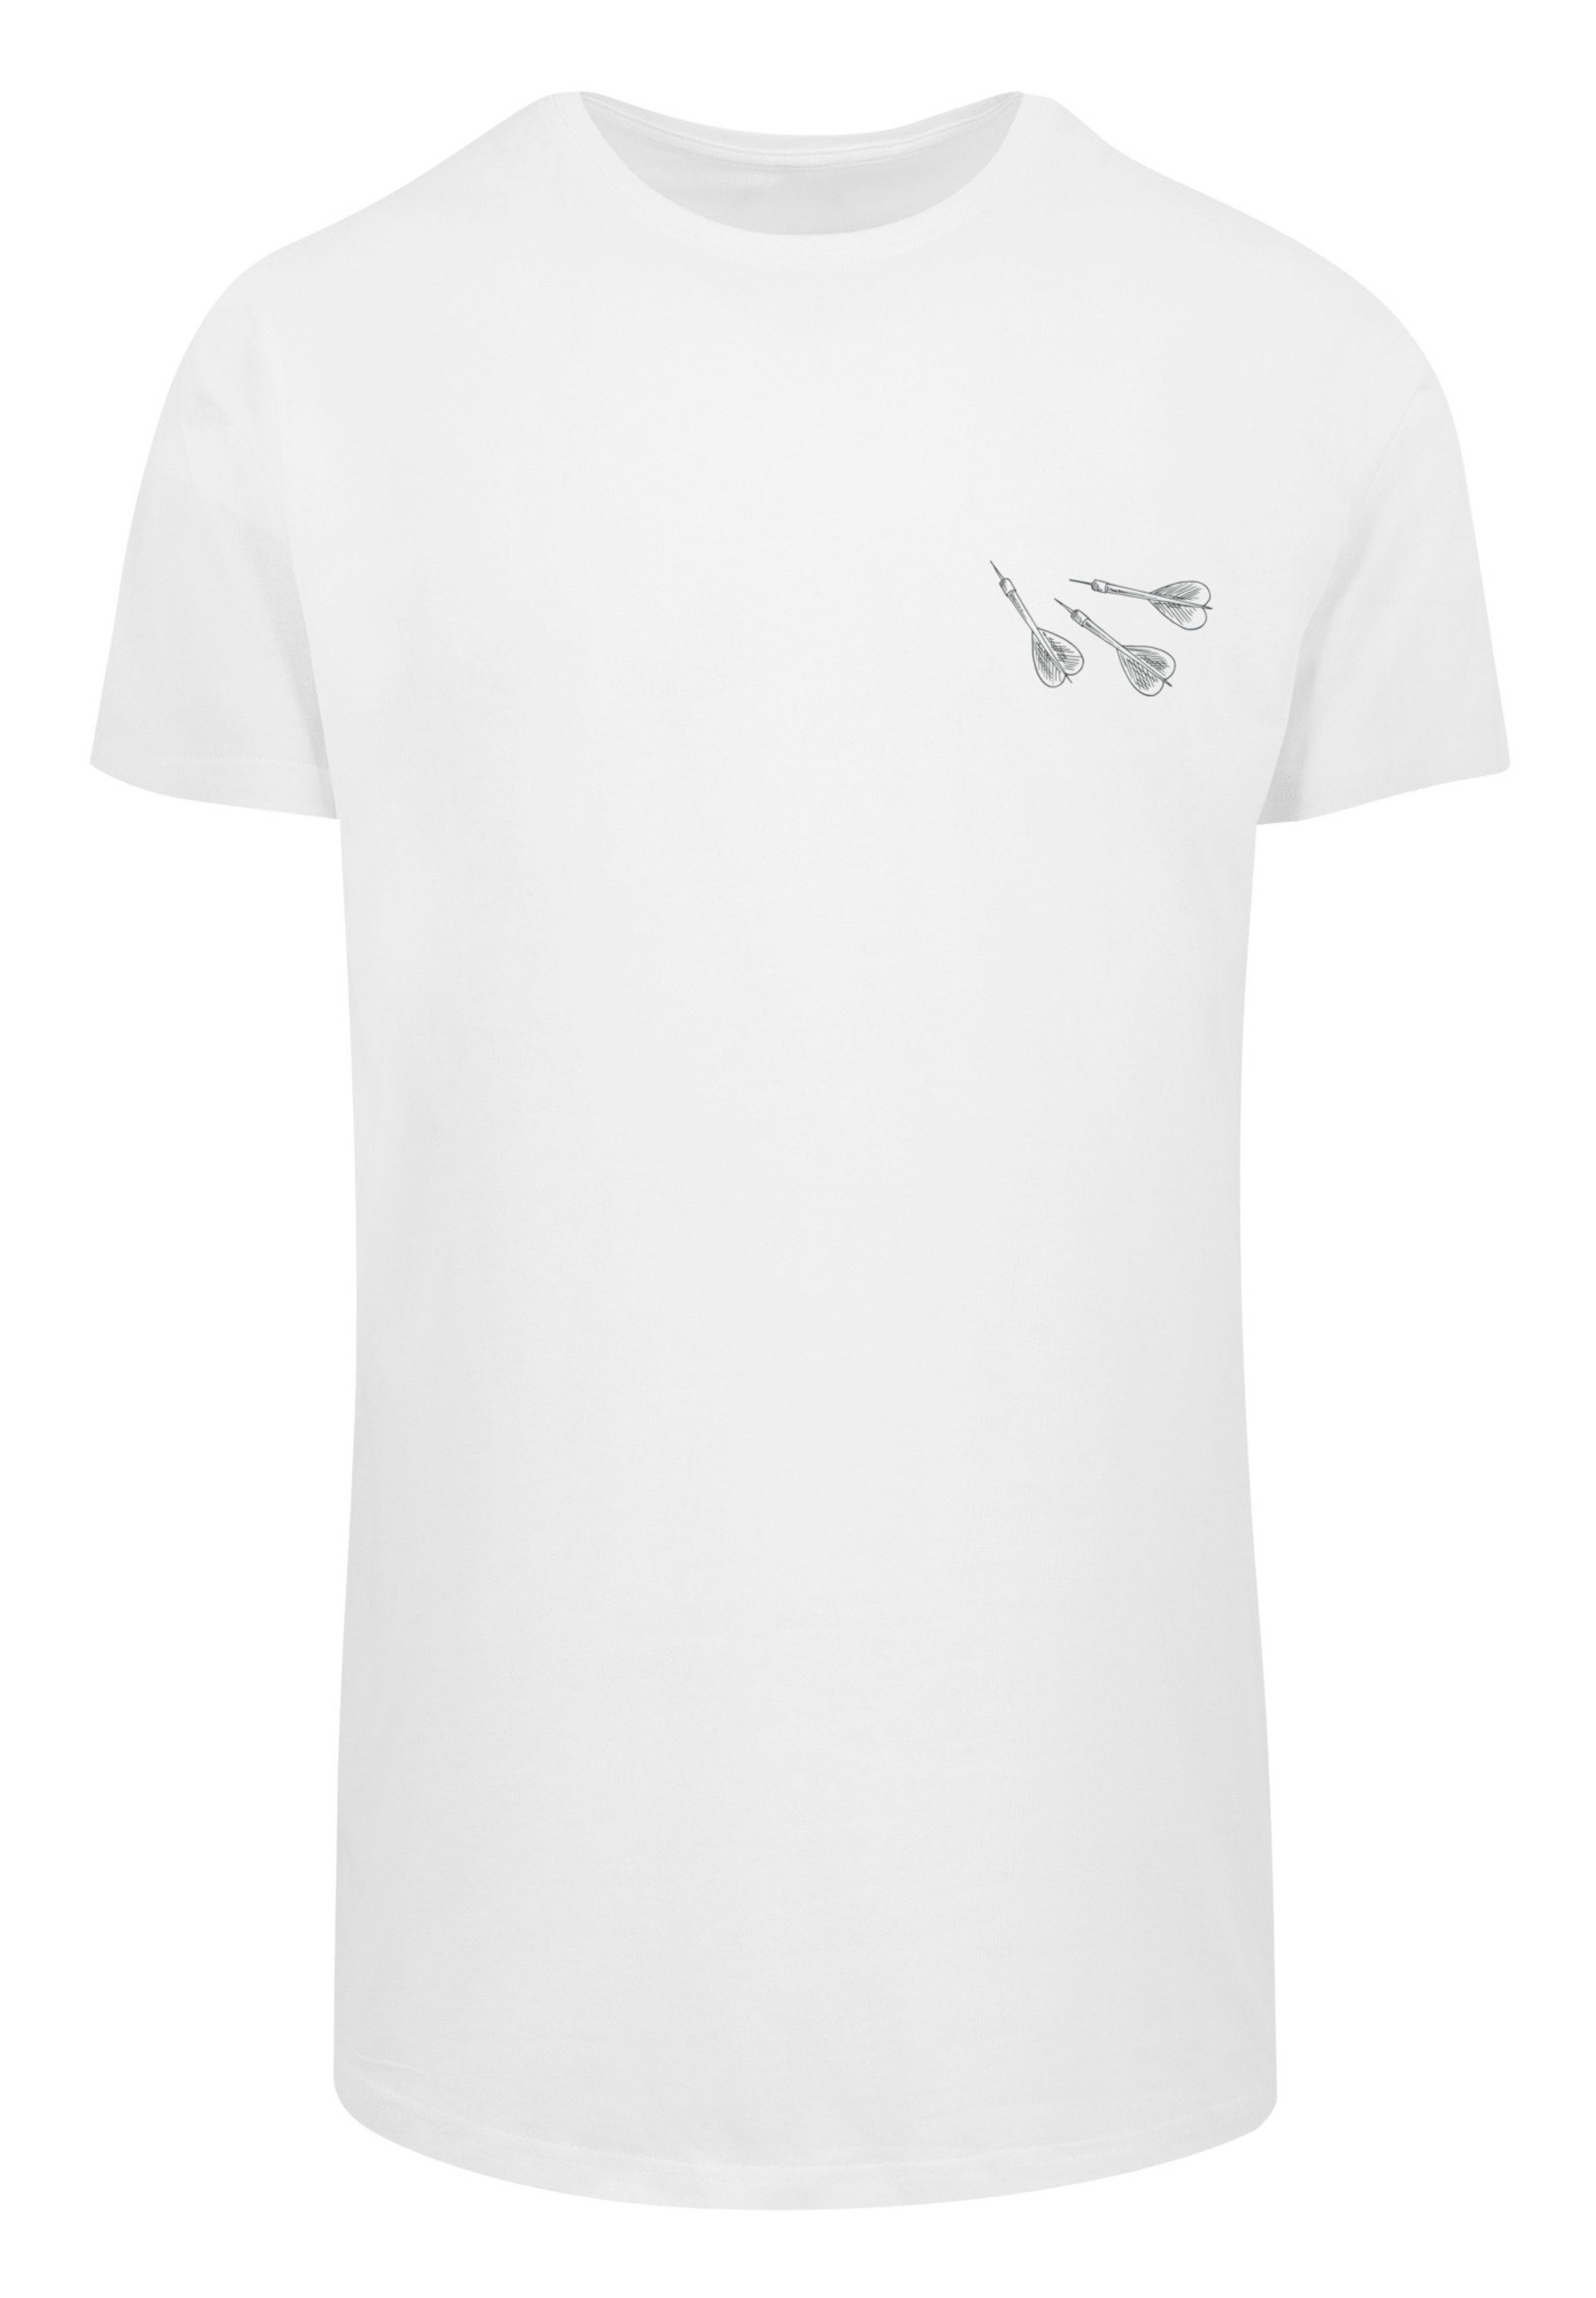 weiß Darts T-Shirt Arrows Dartpfeile Print F4NT4STIC